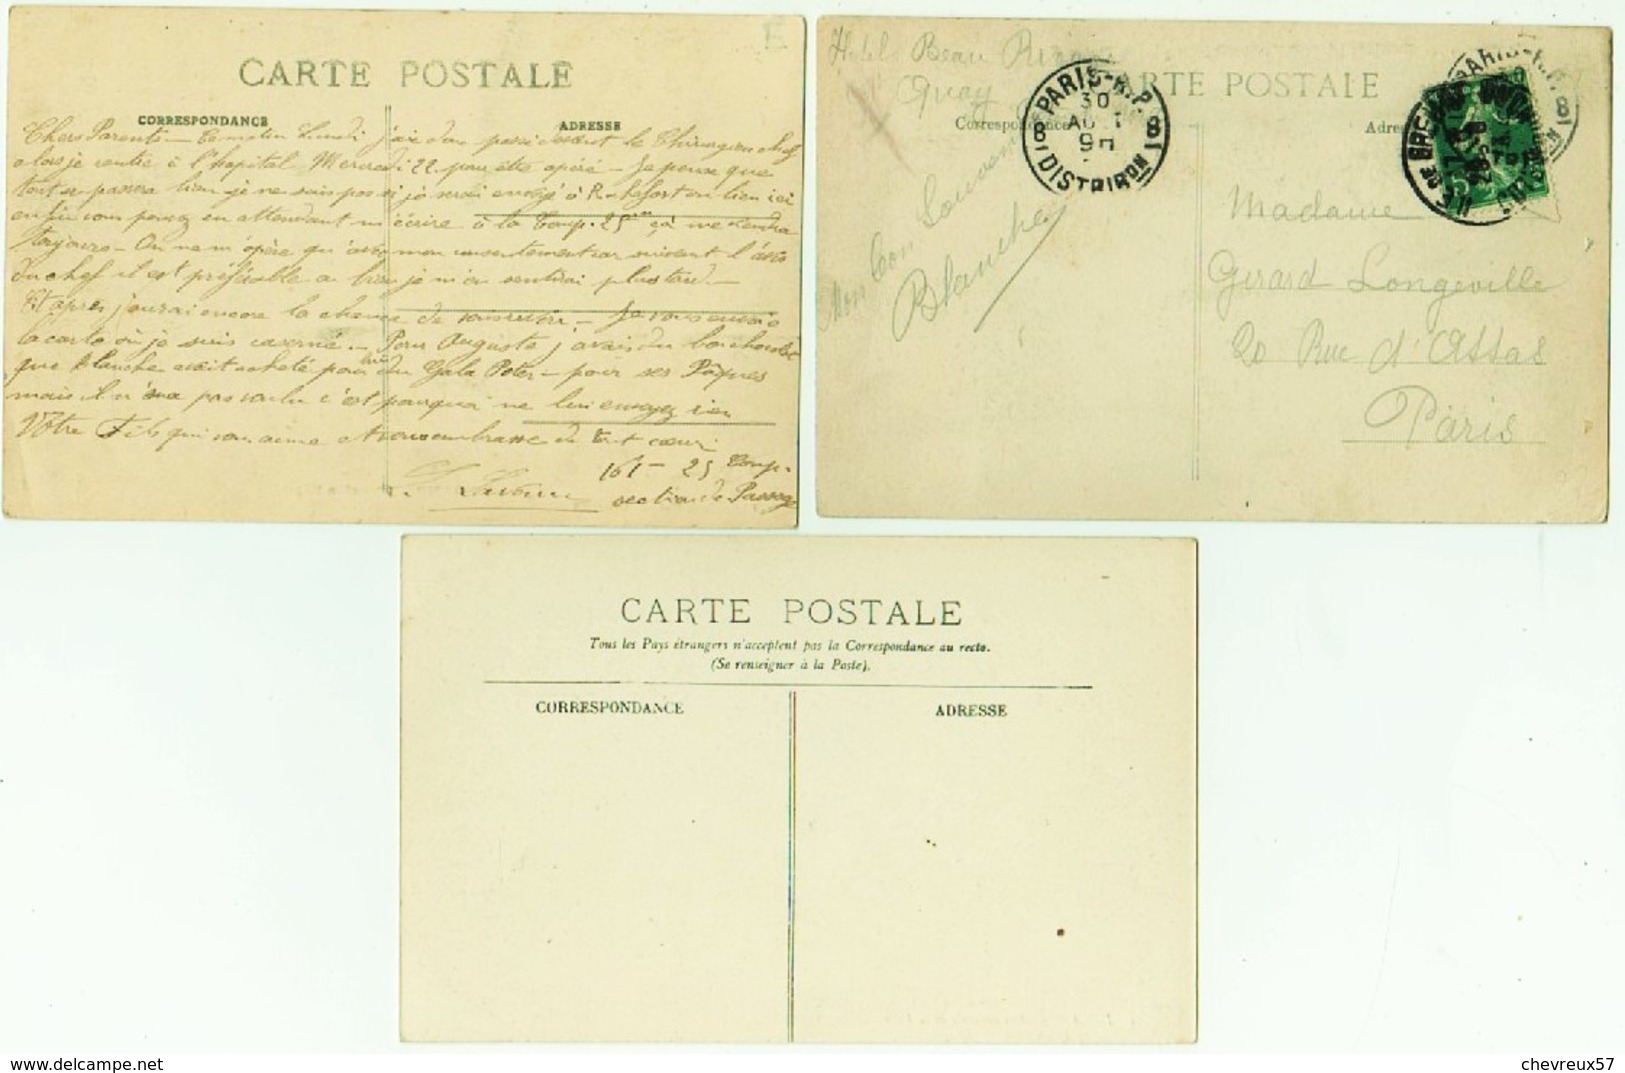 VILLES ET VILLAGES DE FRANCE - LOT 25 - 35 cartes anciennes - Bretagne